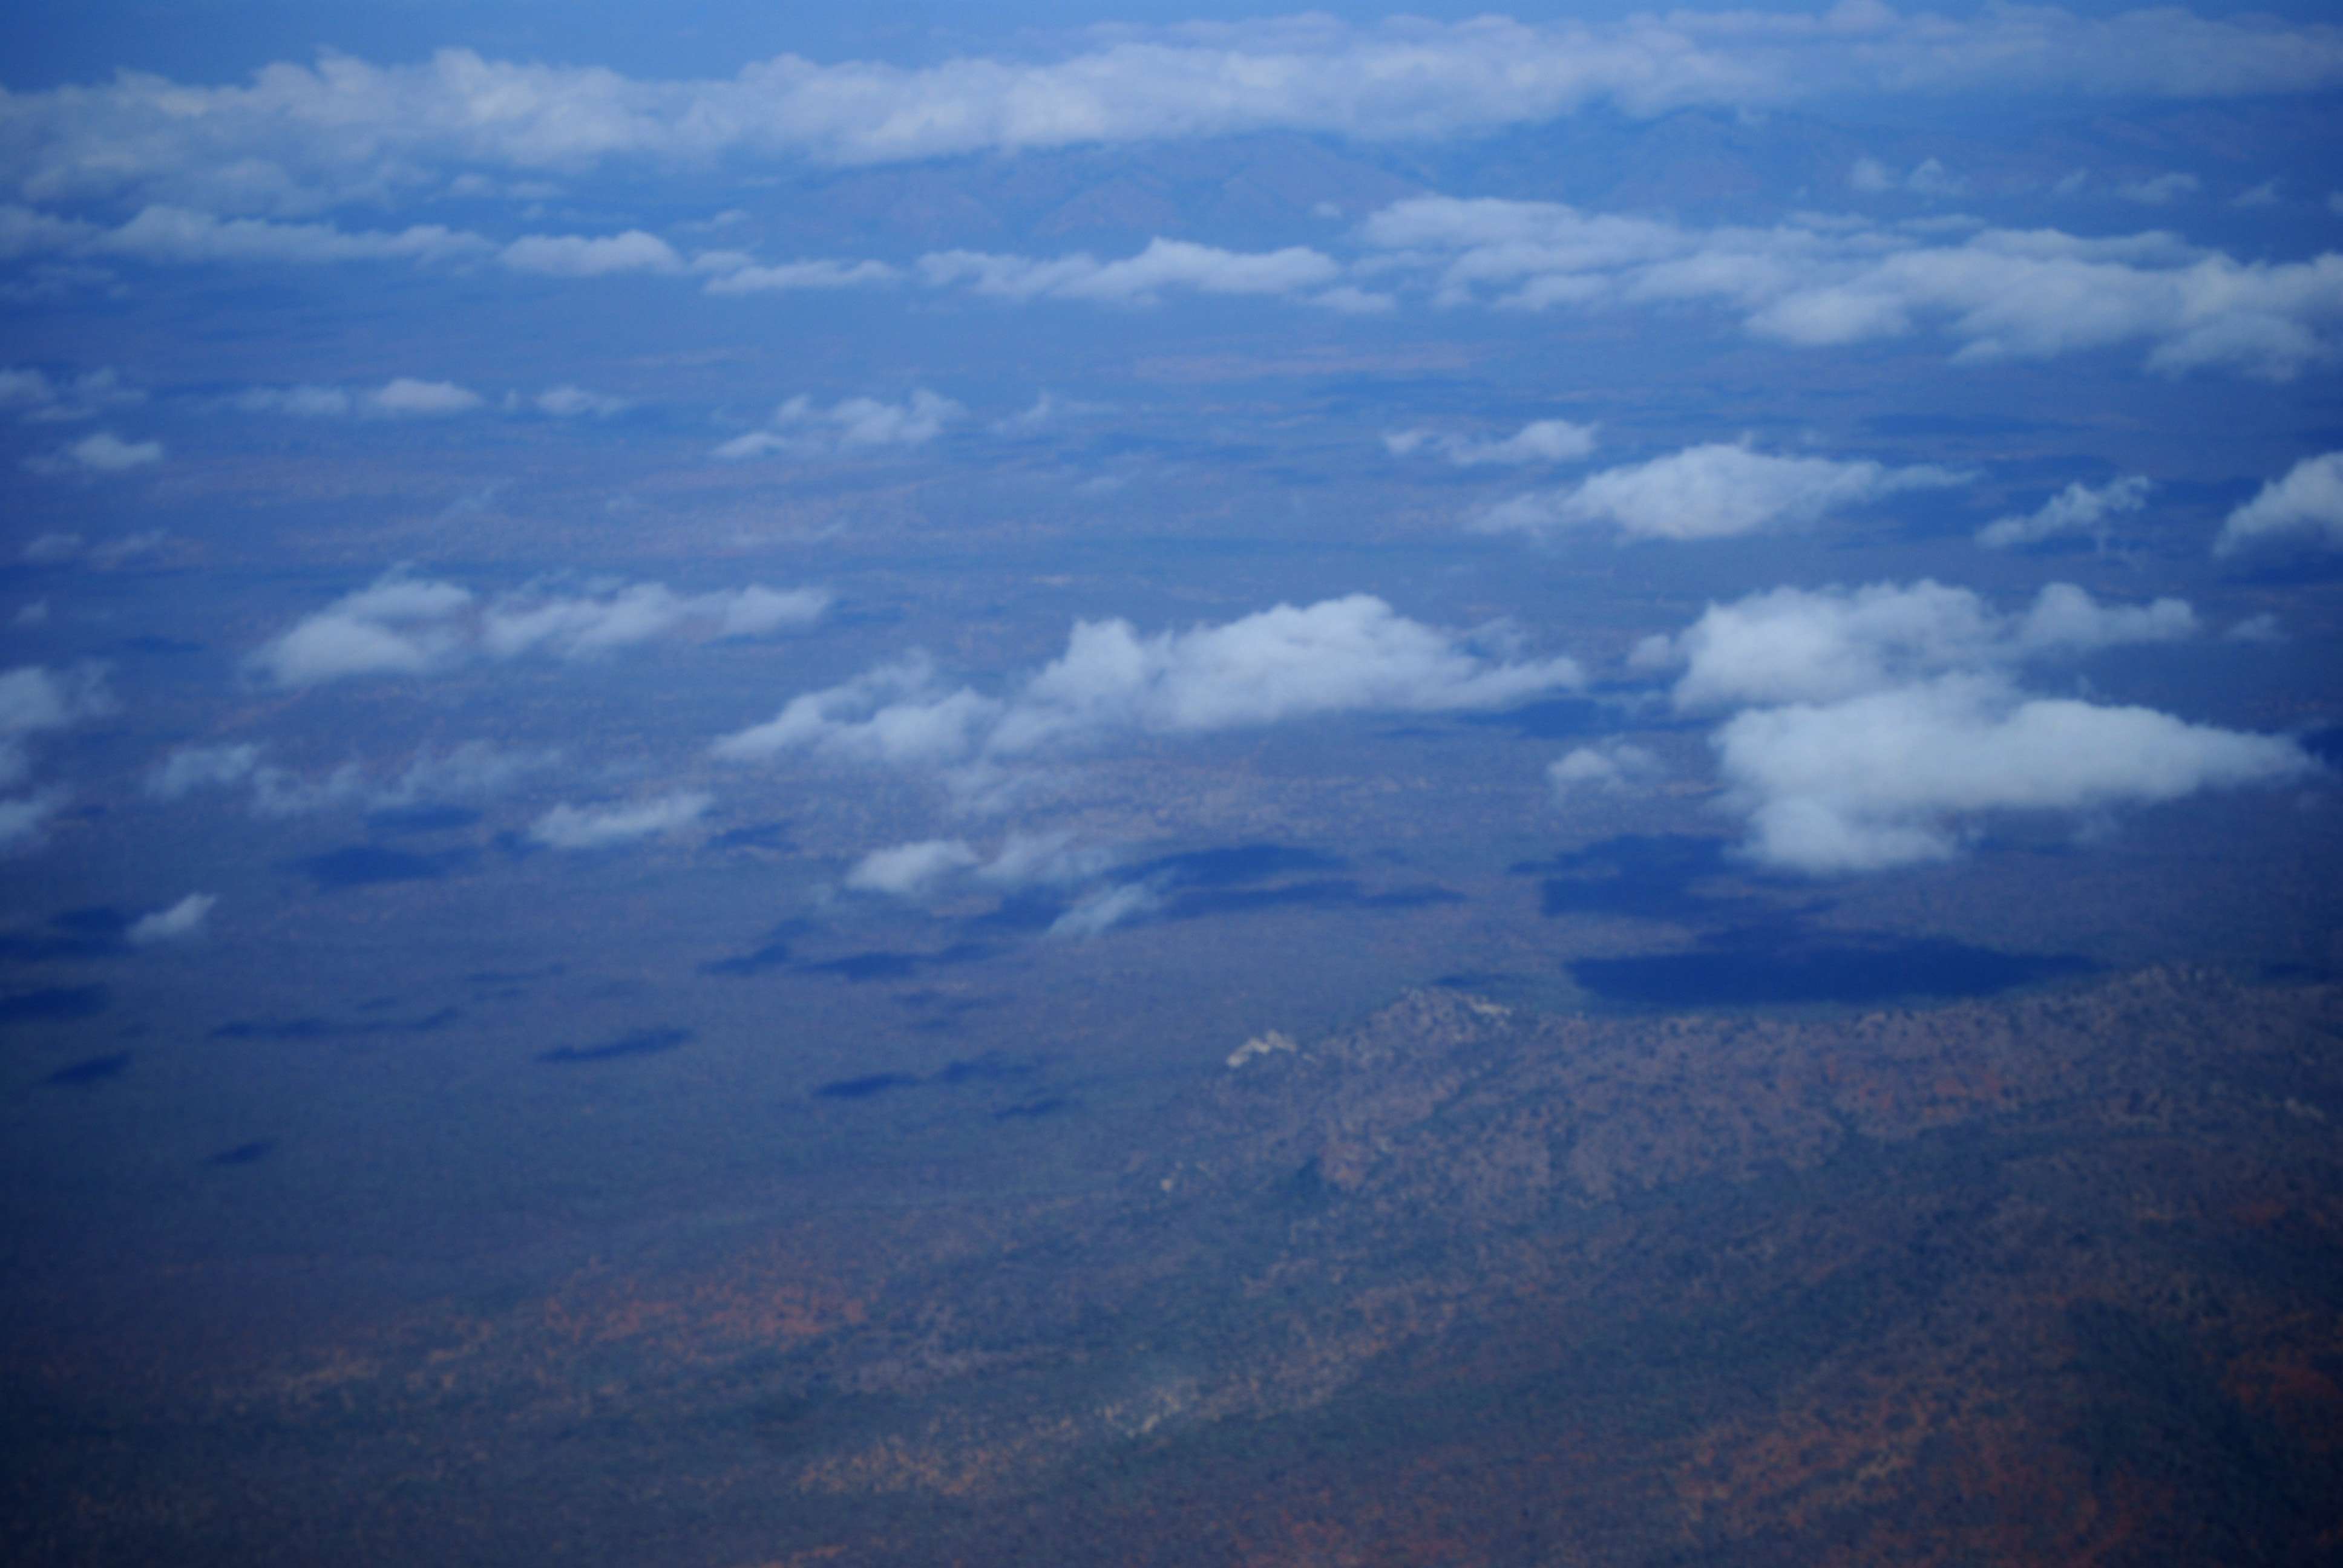 Kenia una experiencia inolvidable - Blogs de Kenia - Amboseli, el descubrimiento de Africa (1)